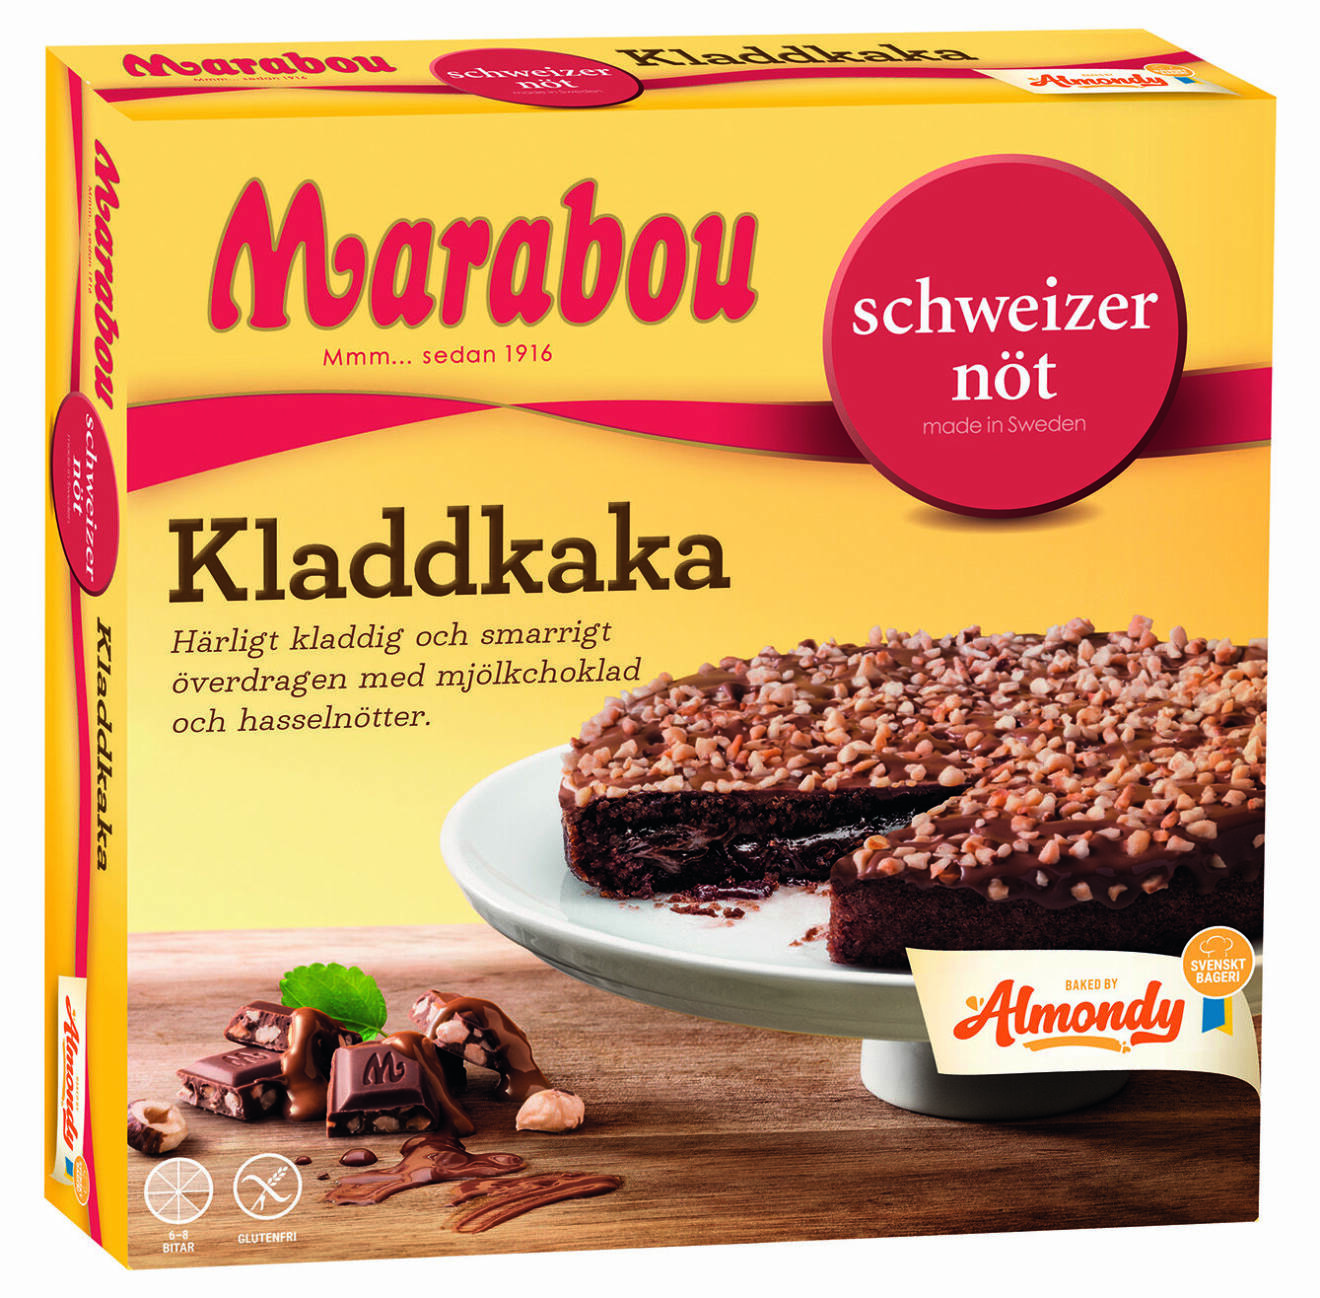 Almondys kladdkakor får sin kladdighet från Marabou mjölkchoklad som smälts ned i smeten.